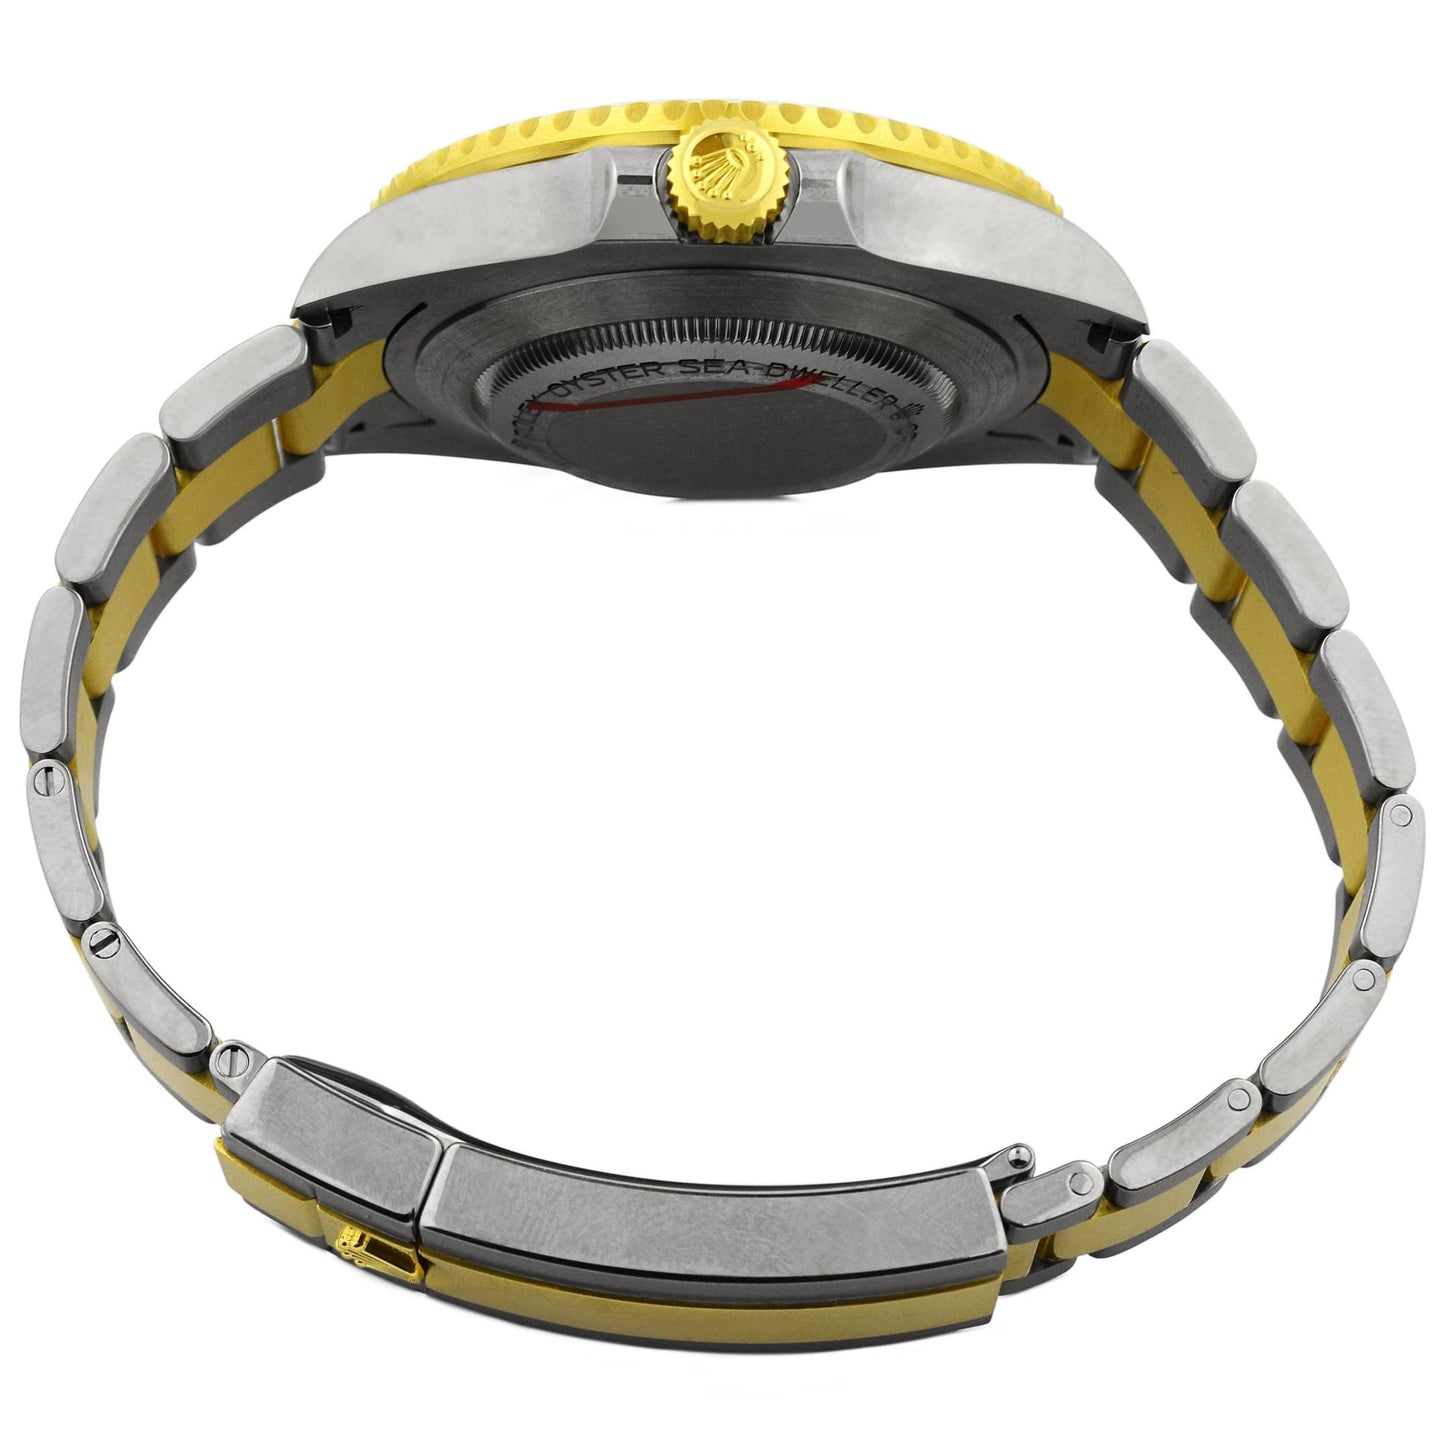 Rolex Men's Sea-Dweller 18K Yellow Gold & Steel 43mm Black Dot Dial Watch Reference #: 126603 - Happy Jewelers Fine Jewelry Lifetime Warranty